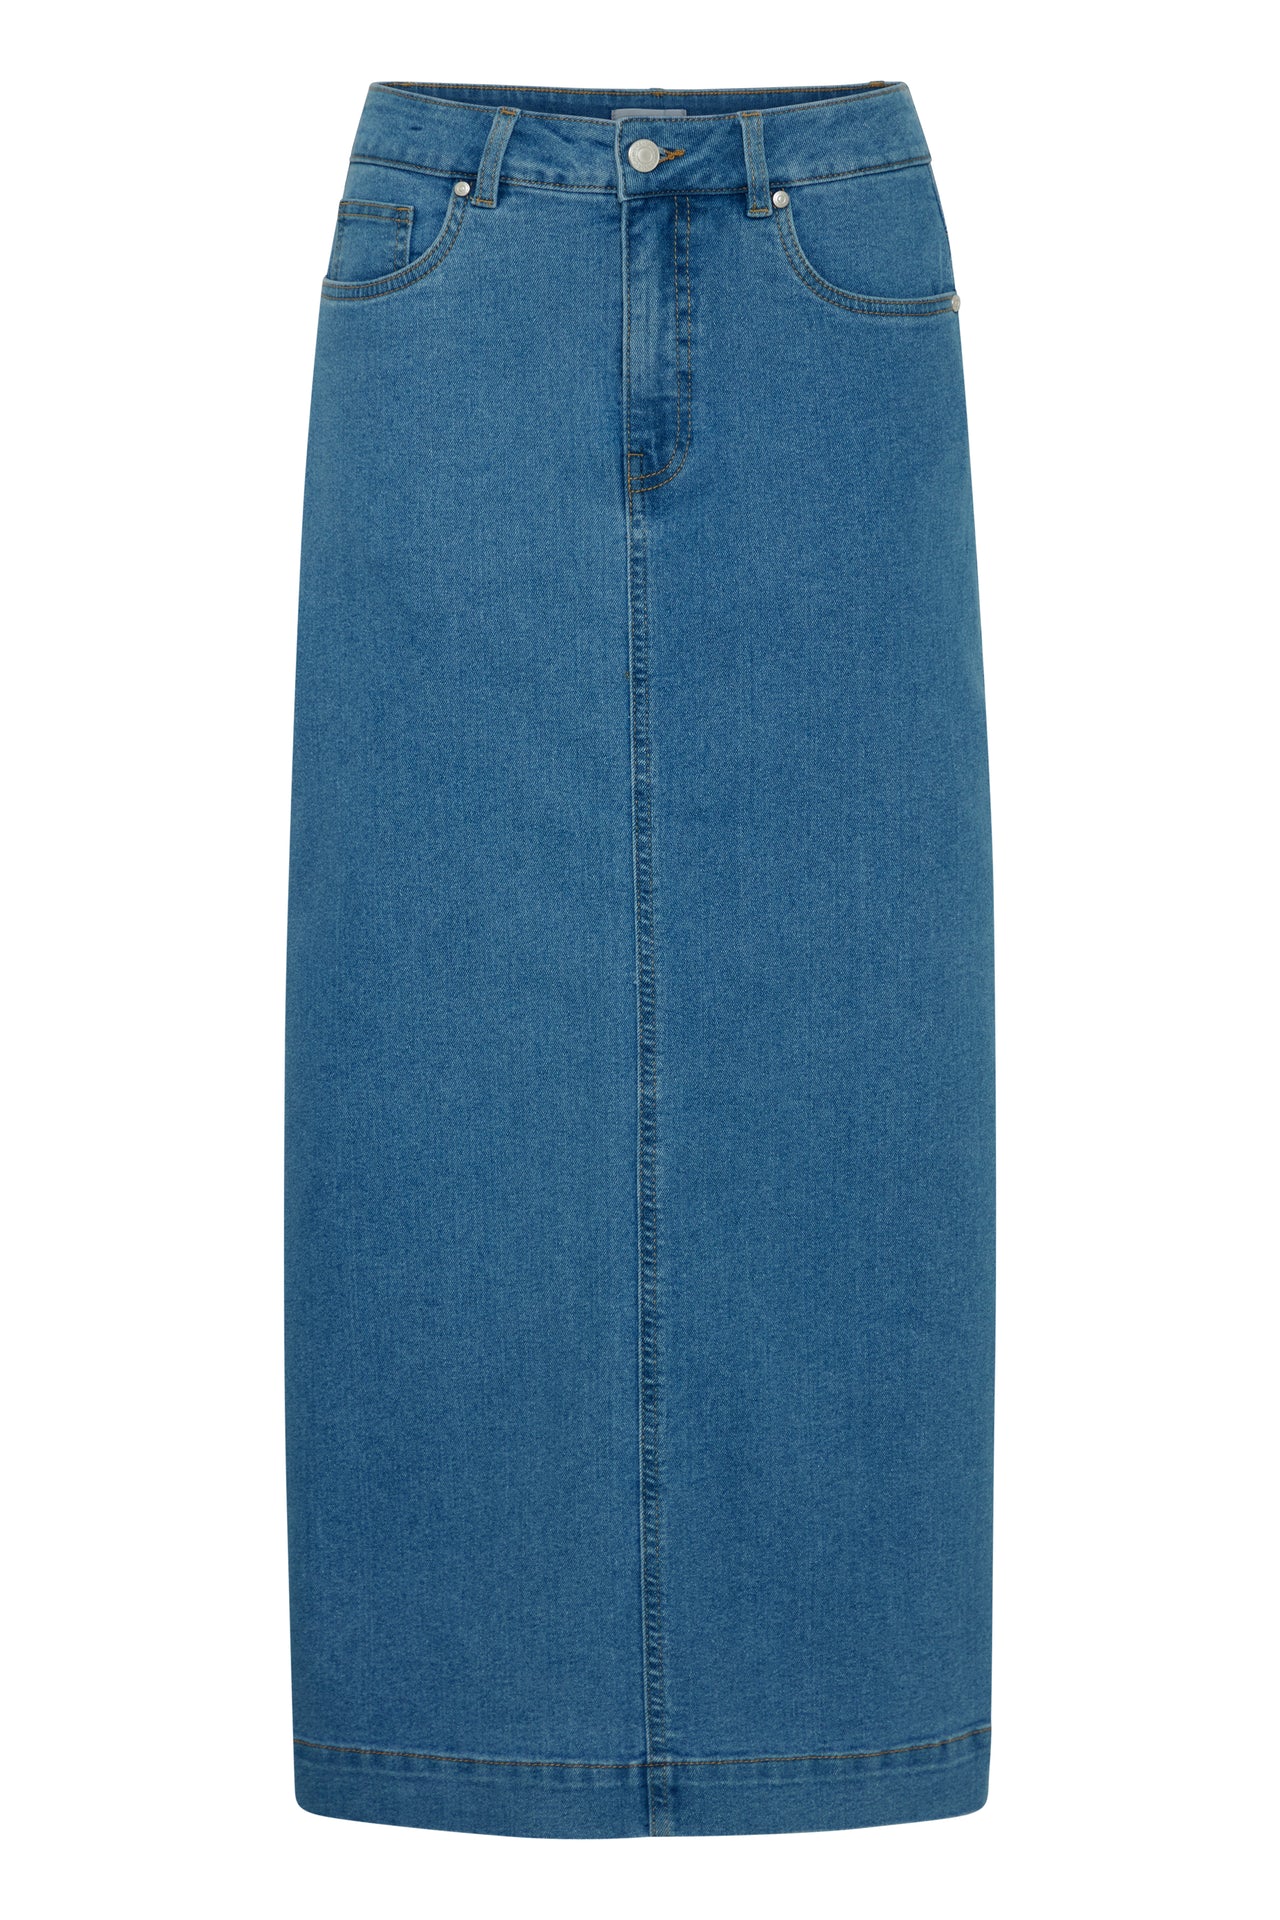 Fransa Denima Mid Blue Denim Skirt